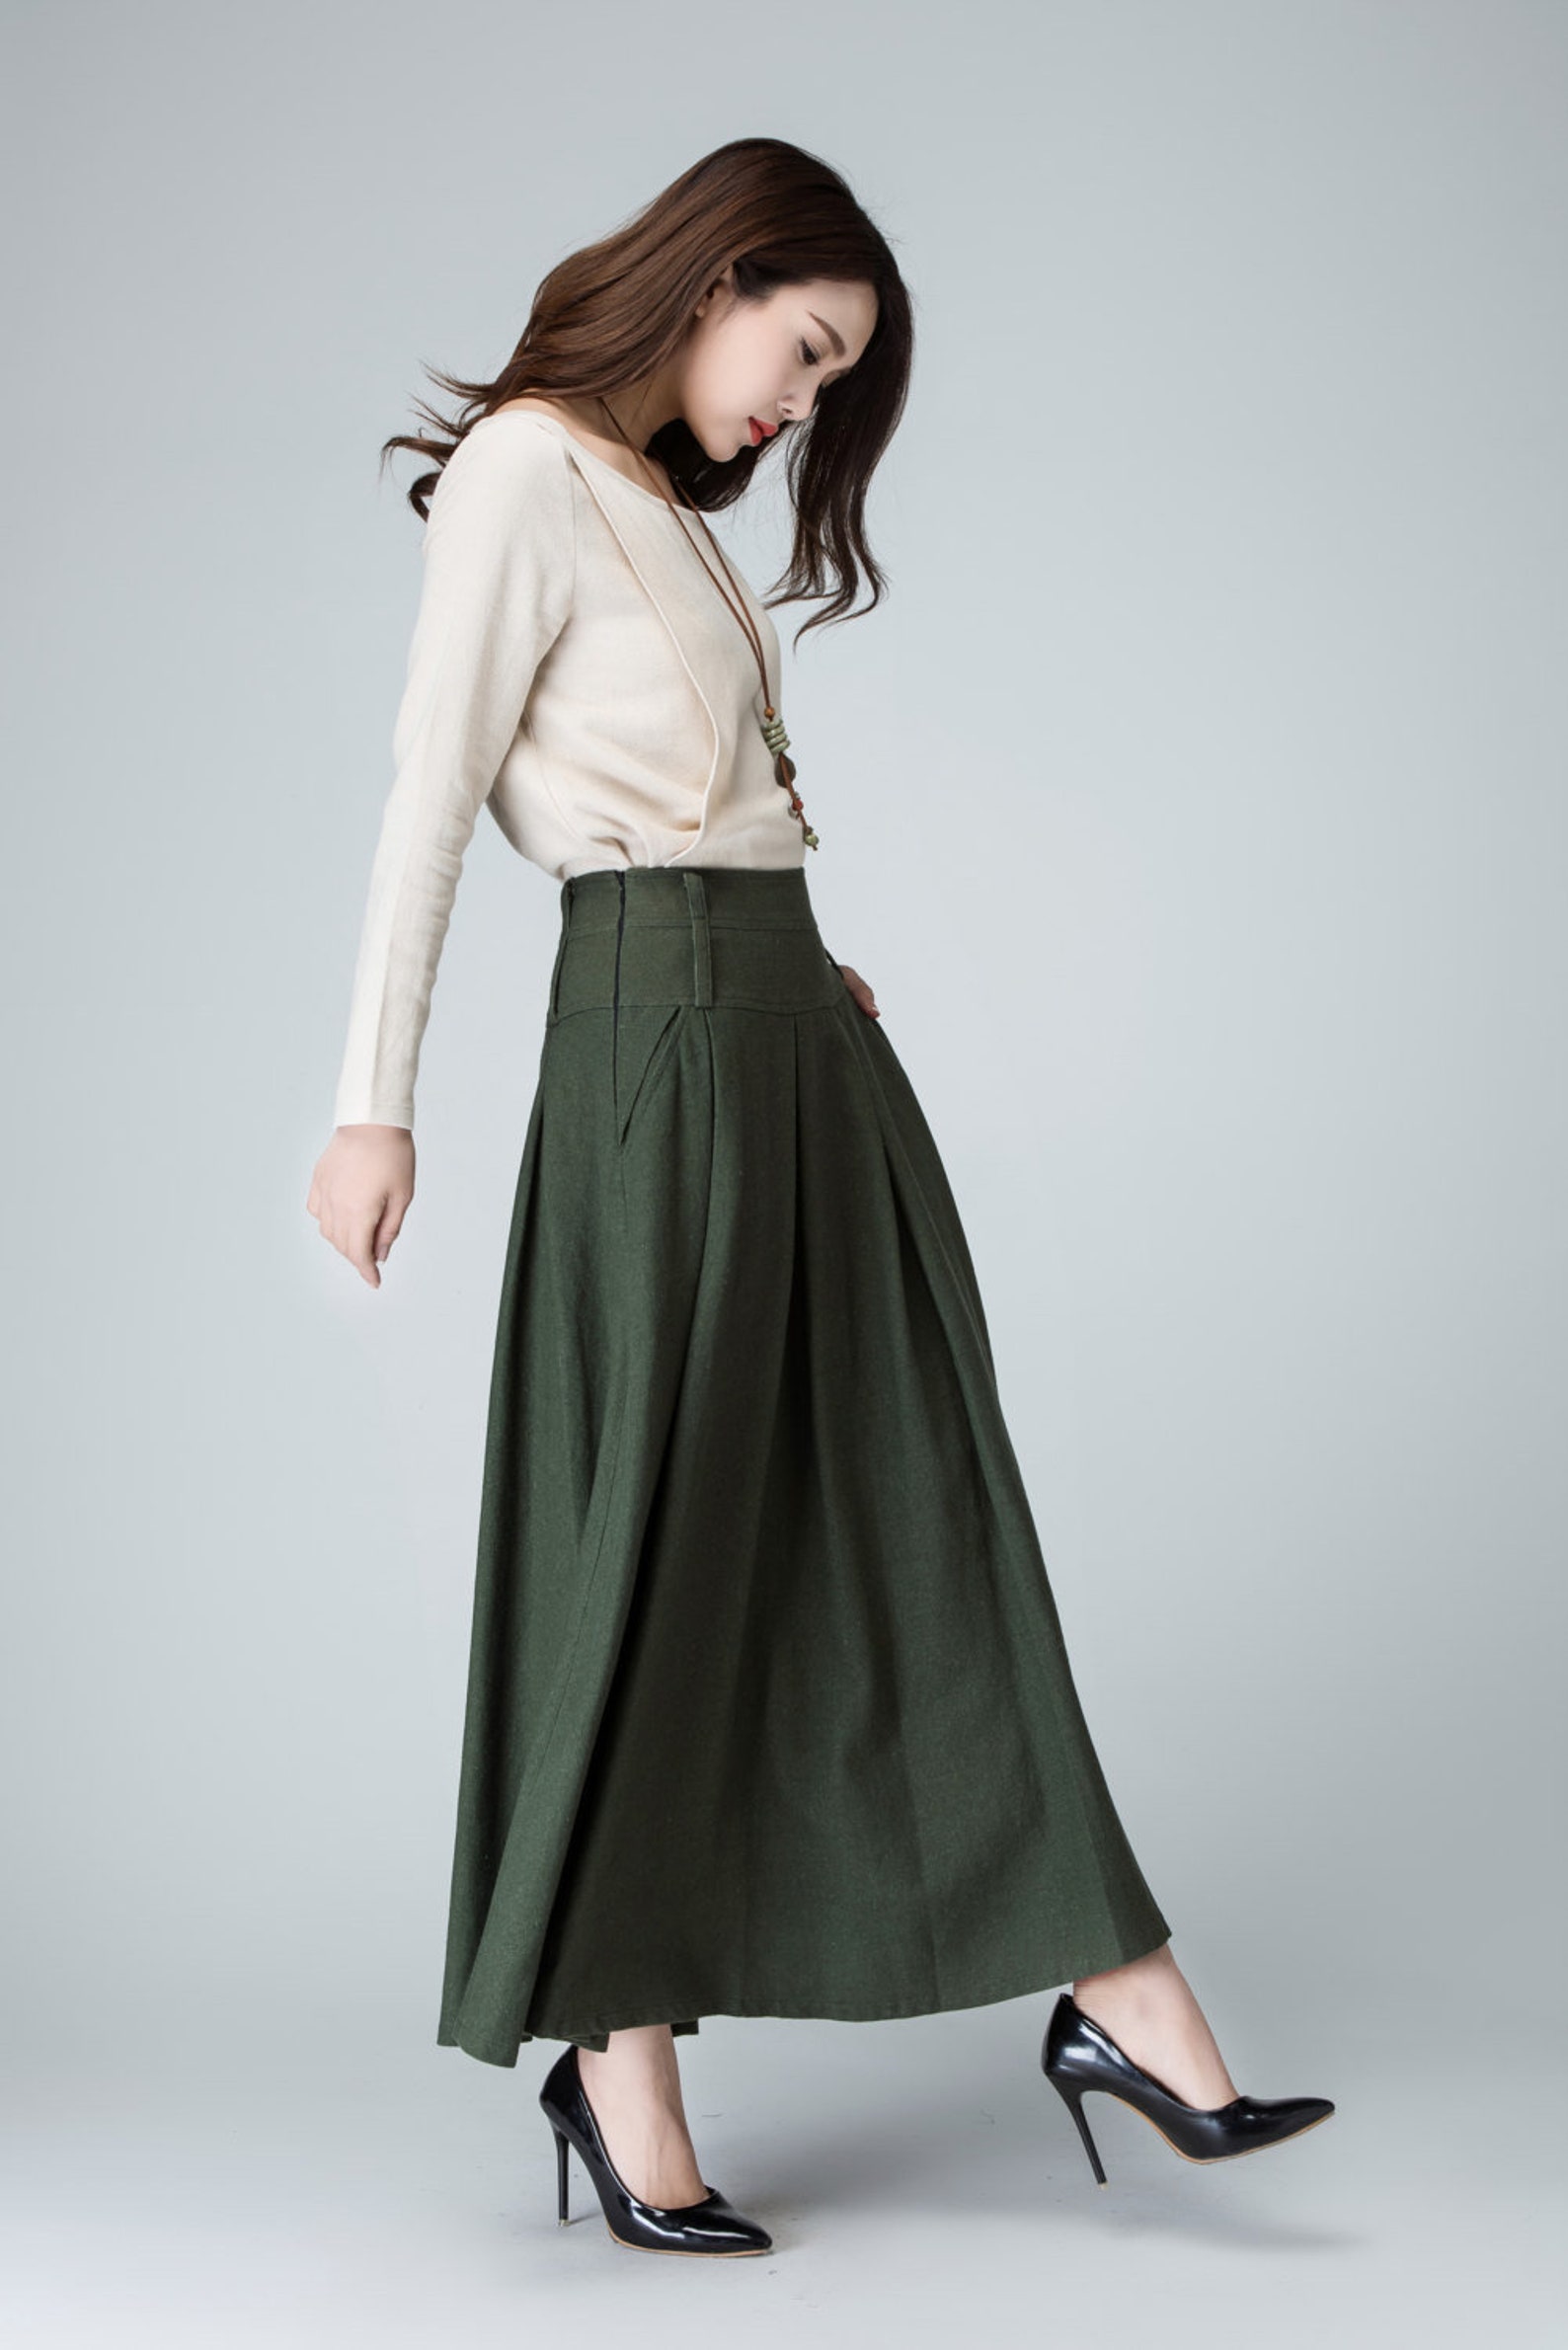 Olive Green Skirt Long Skirt Pleated Maxi Skirt Linen Etsy